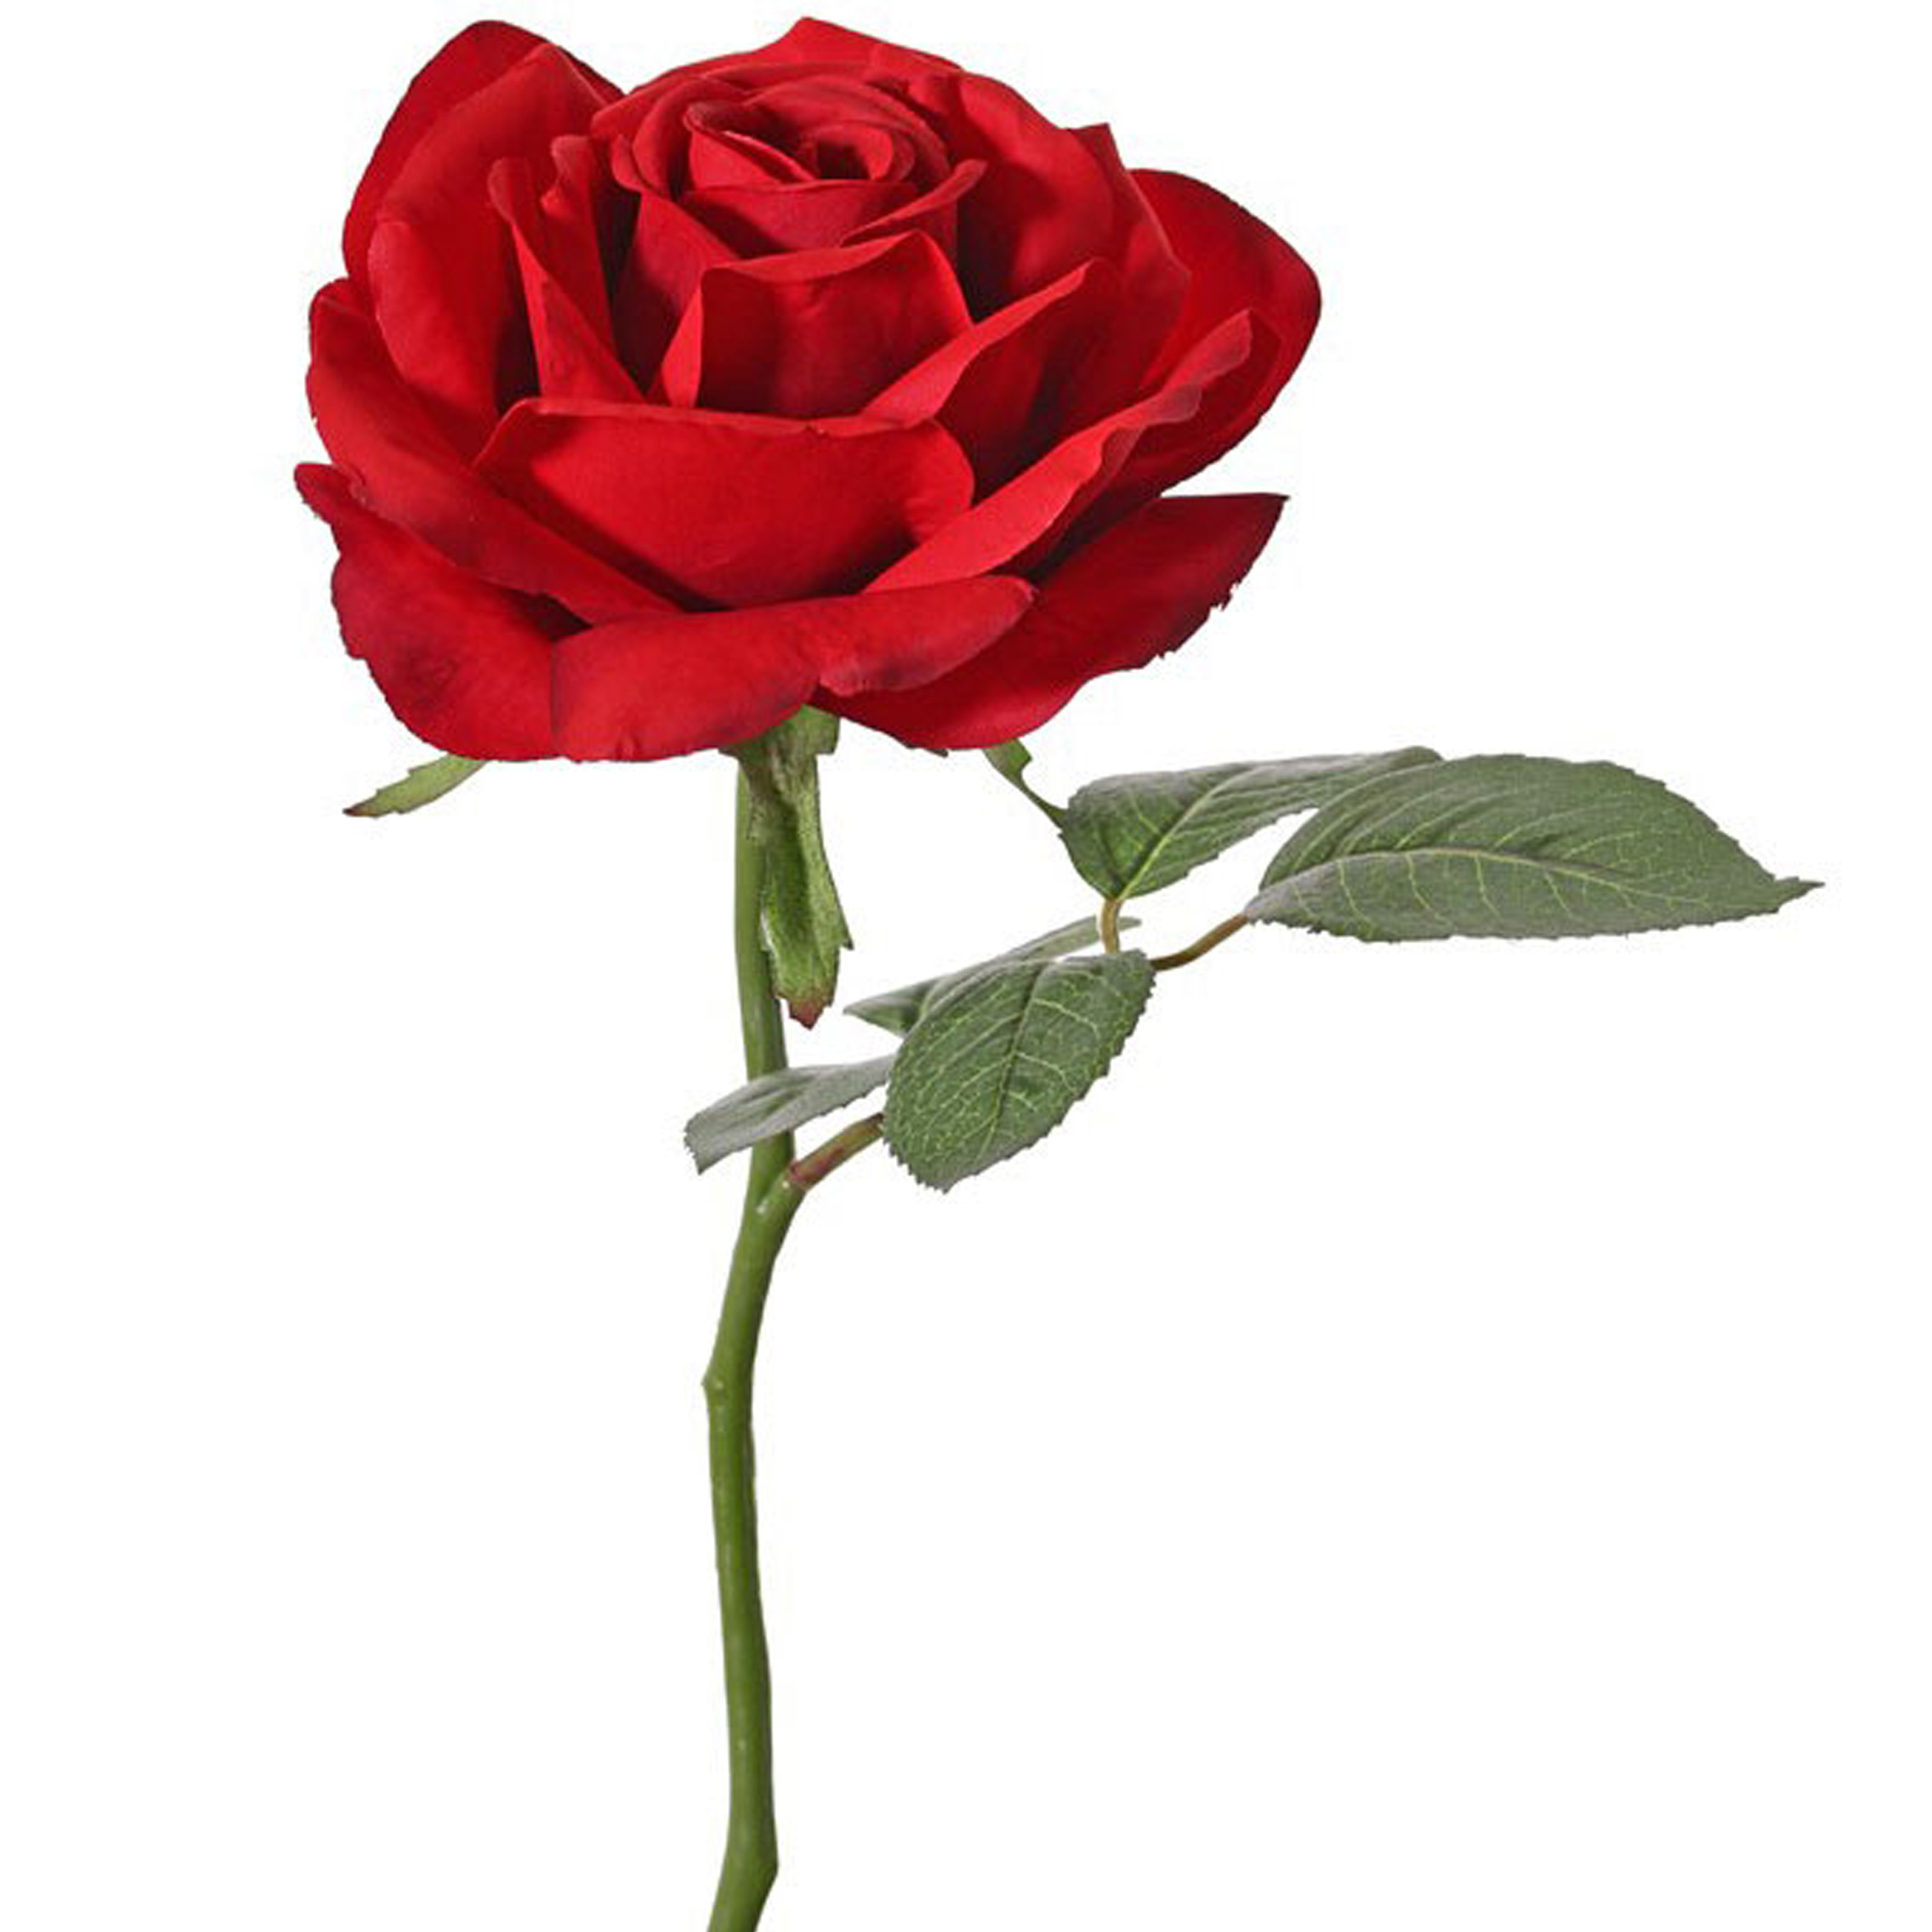 Kunstbloem Roos de luxe - rood - 30 cm - kunststof steel - decoratie bloemen